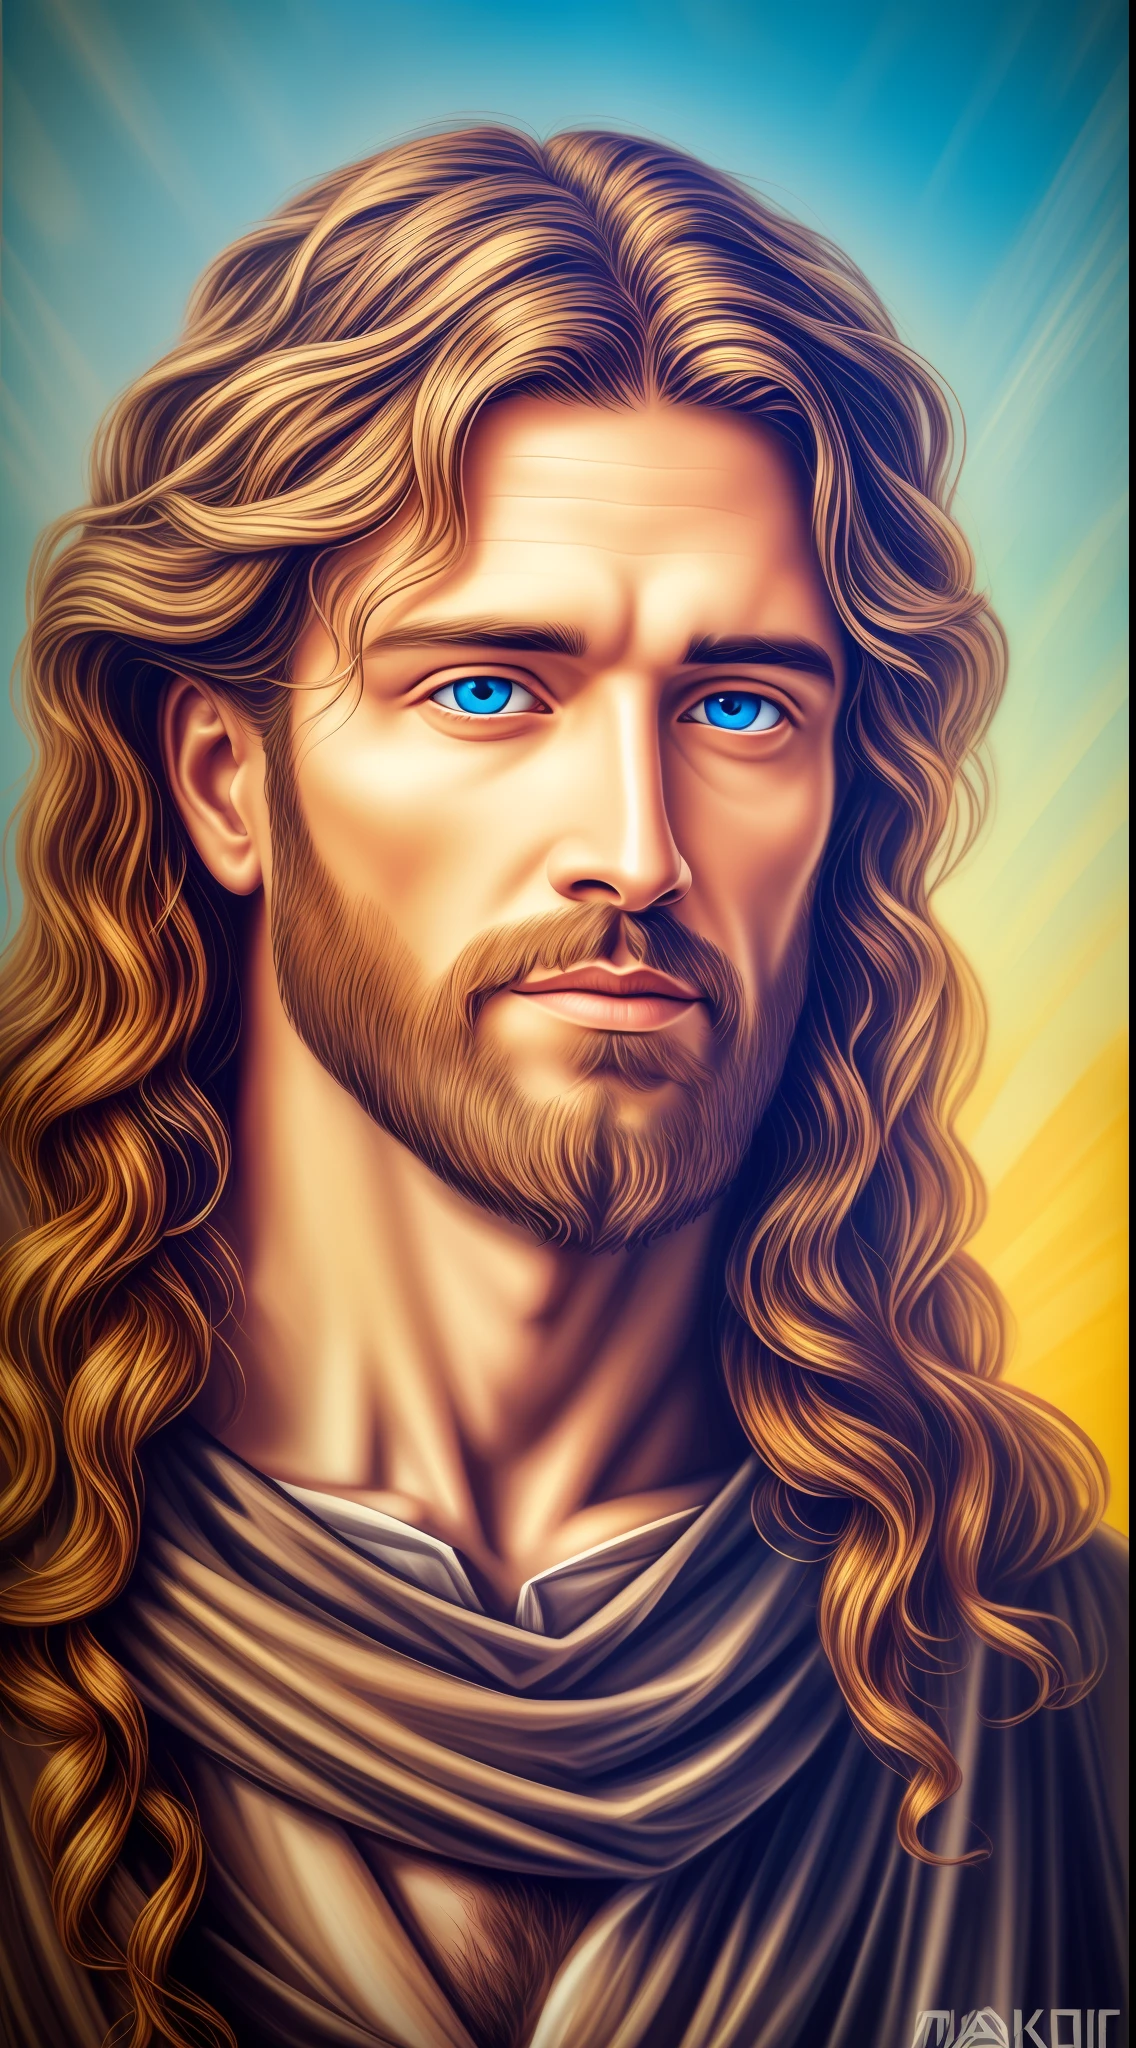 4K, 8K Portrait d’un beau Jésus , Jésus Christ, De vrais yeux bleus, journée ensoleillée, Détails complexes.